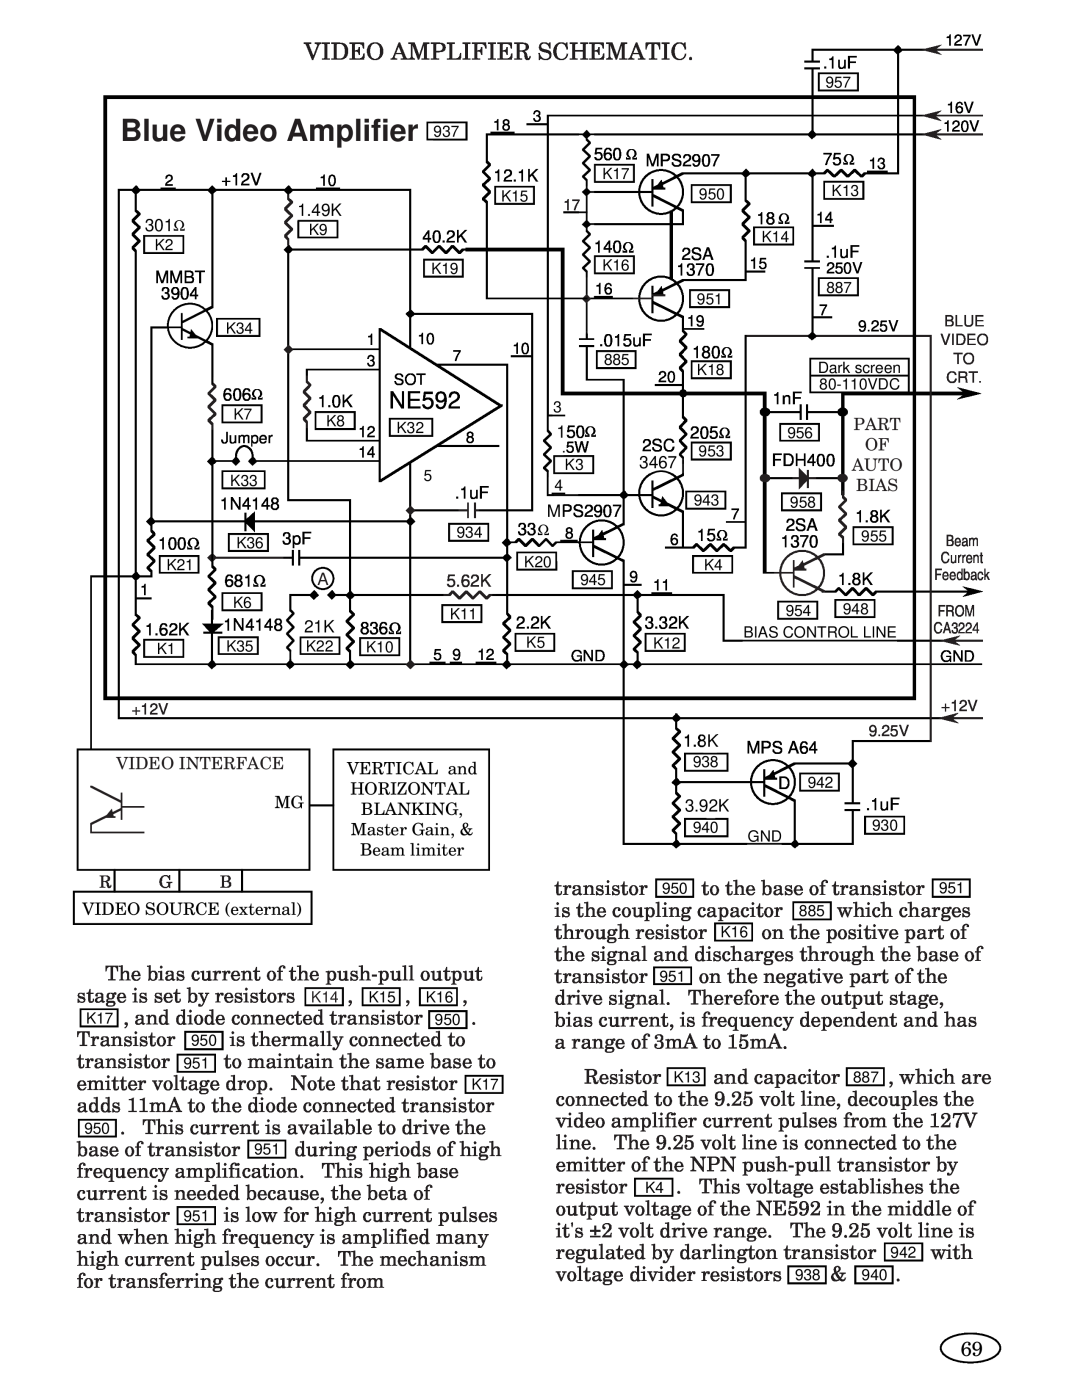 Genius 1793, ISO XFR-75W, 2093, 1493, 2793, 3693, 1993, ISO XFR-100W manual Video Amplifier Schematic, NE592, Blue Video Amplifier 